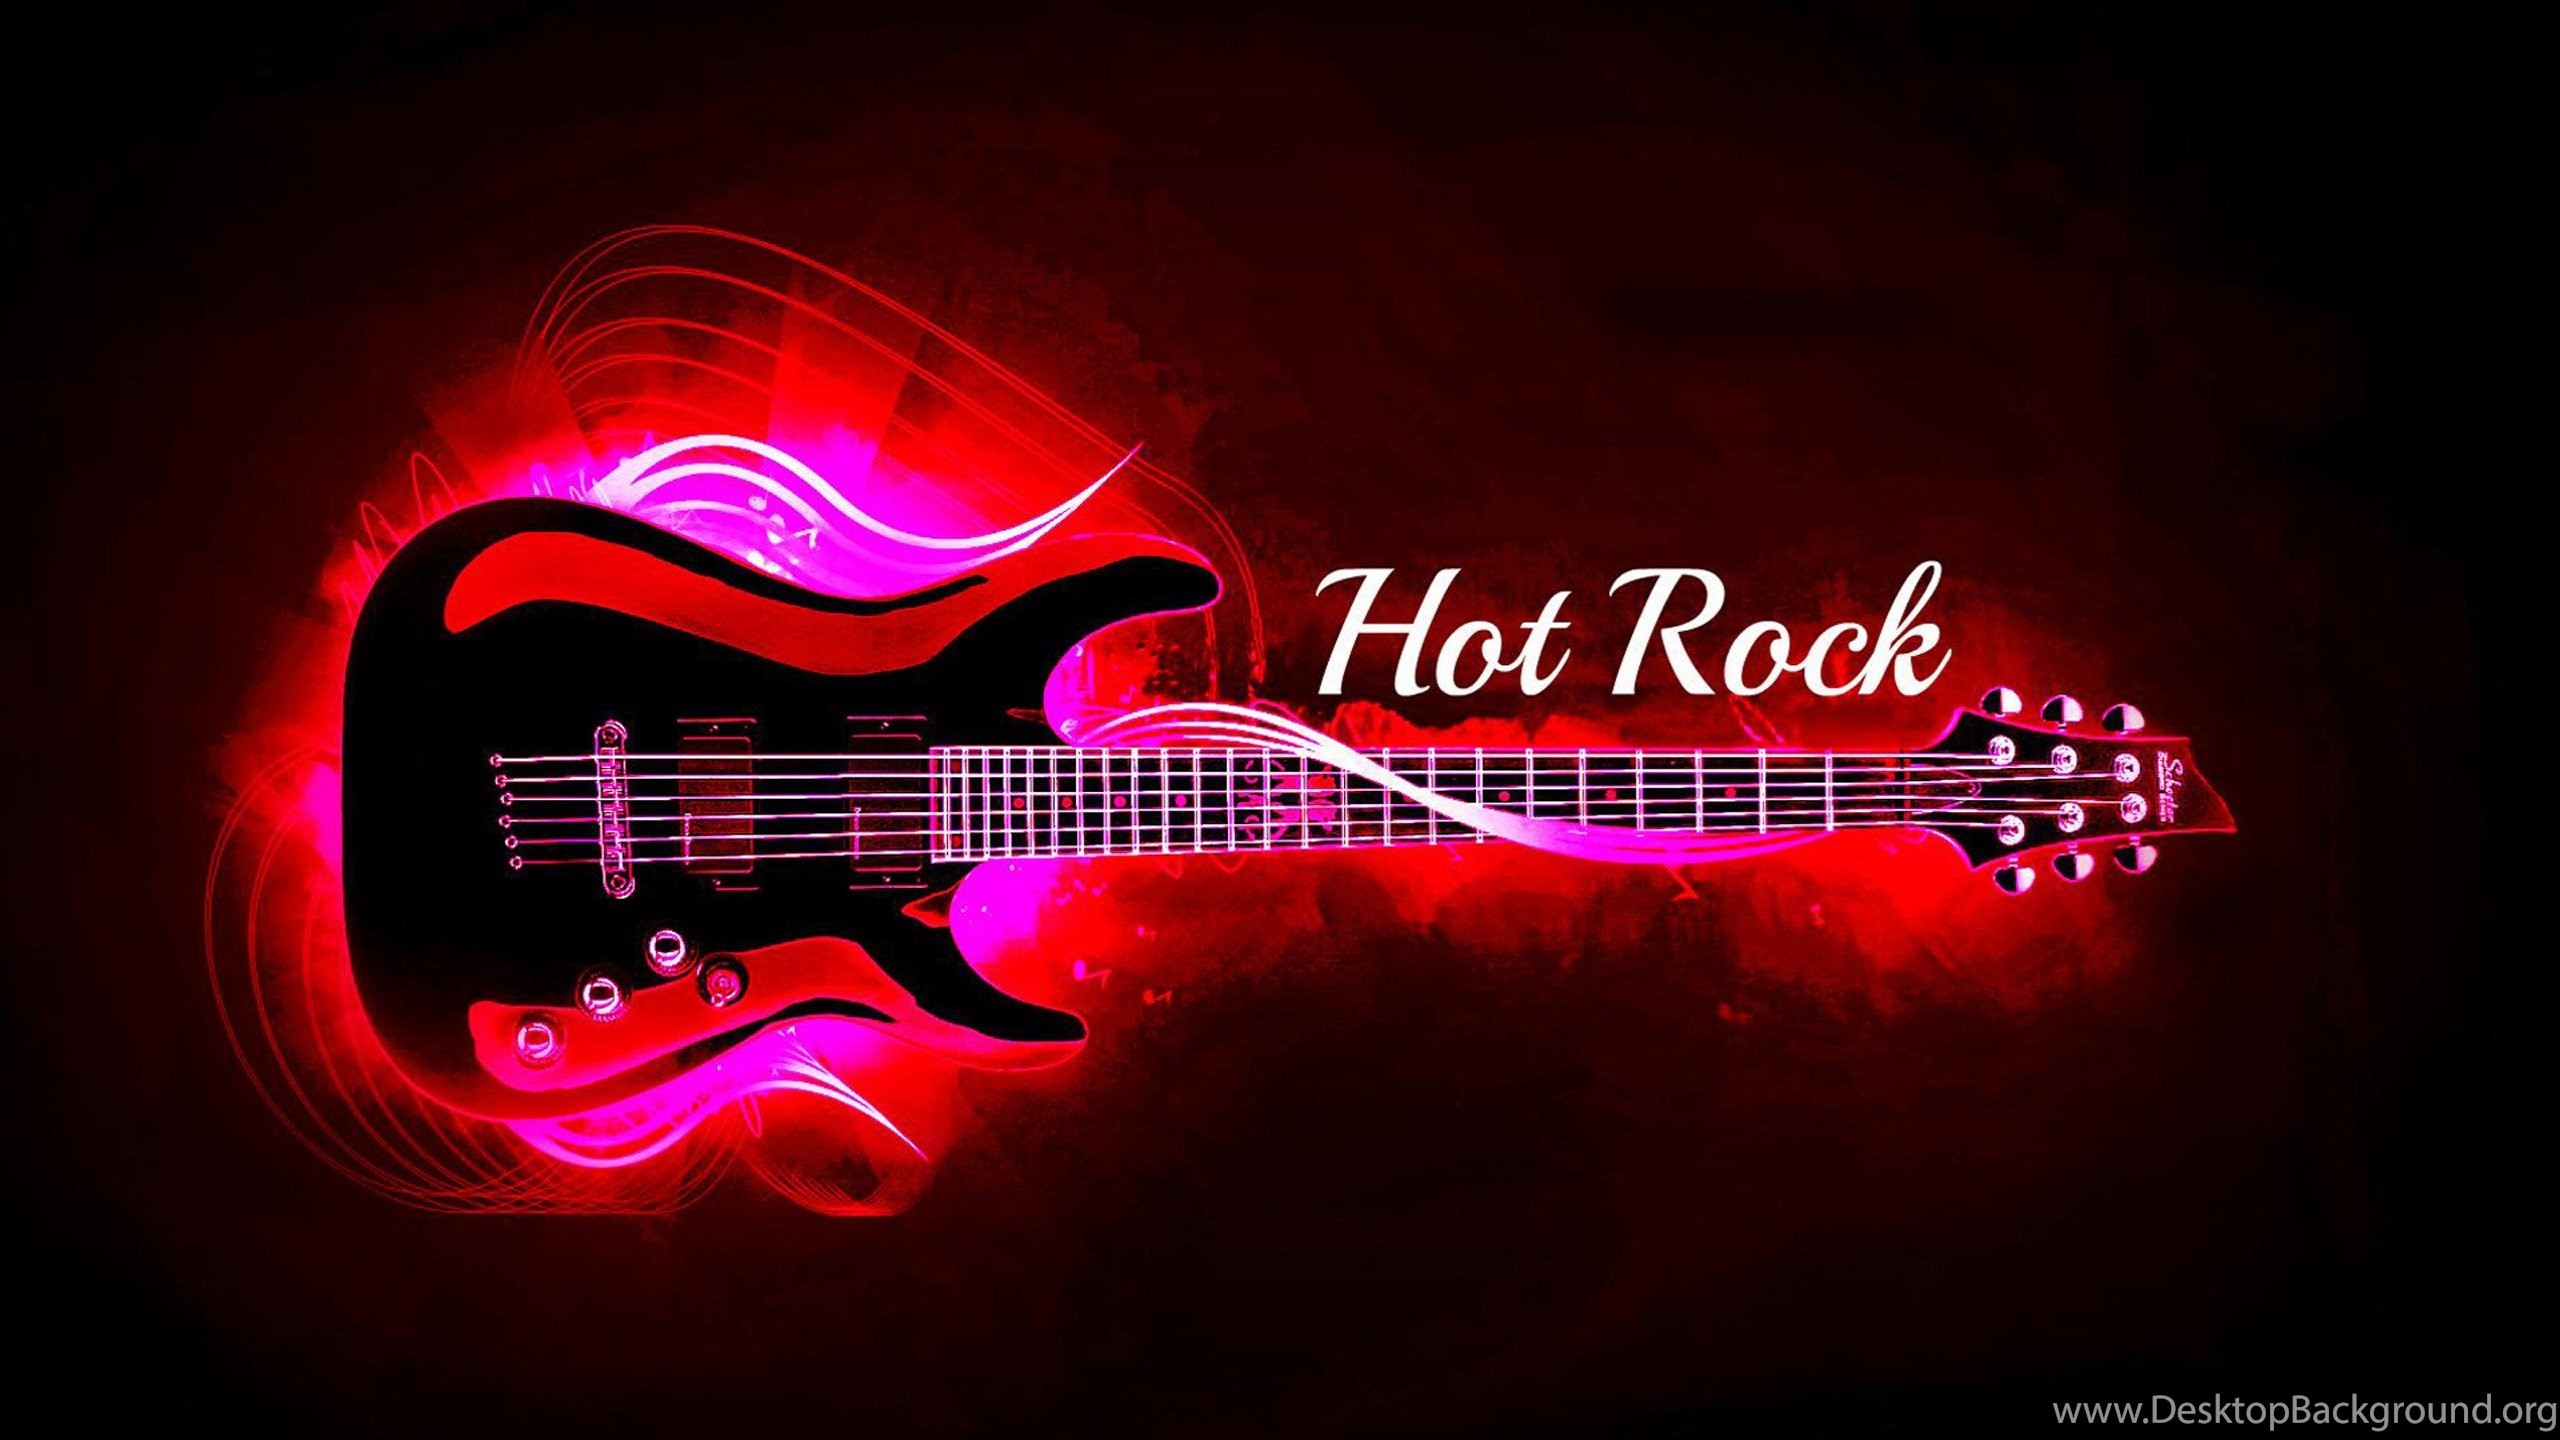 Hot Rock Guitar Wallpaper,music Hd Wallpaper,digital - Rocking Guitar Wallpapers Hd - HD Wallpaper 